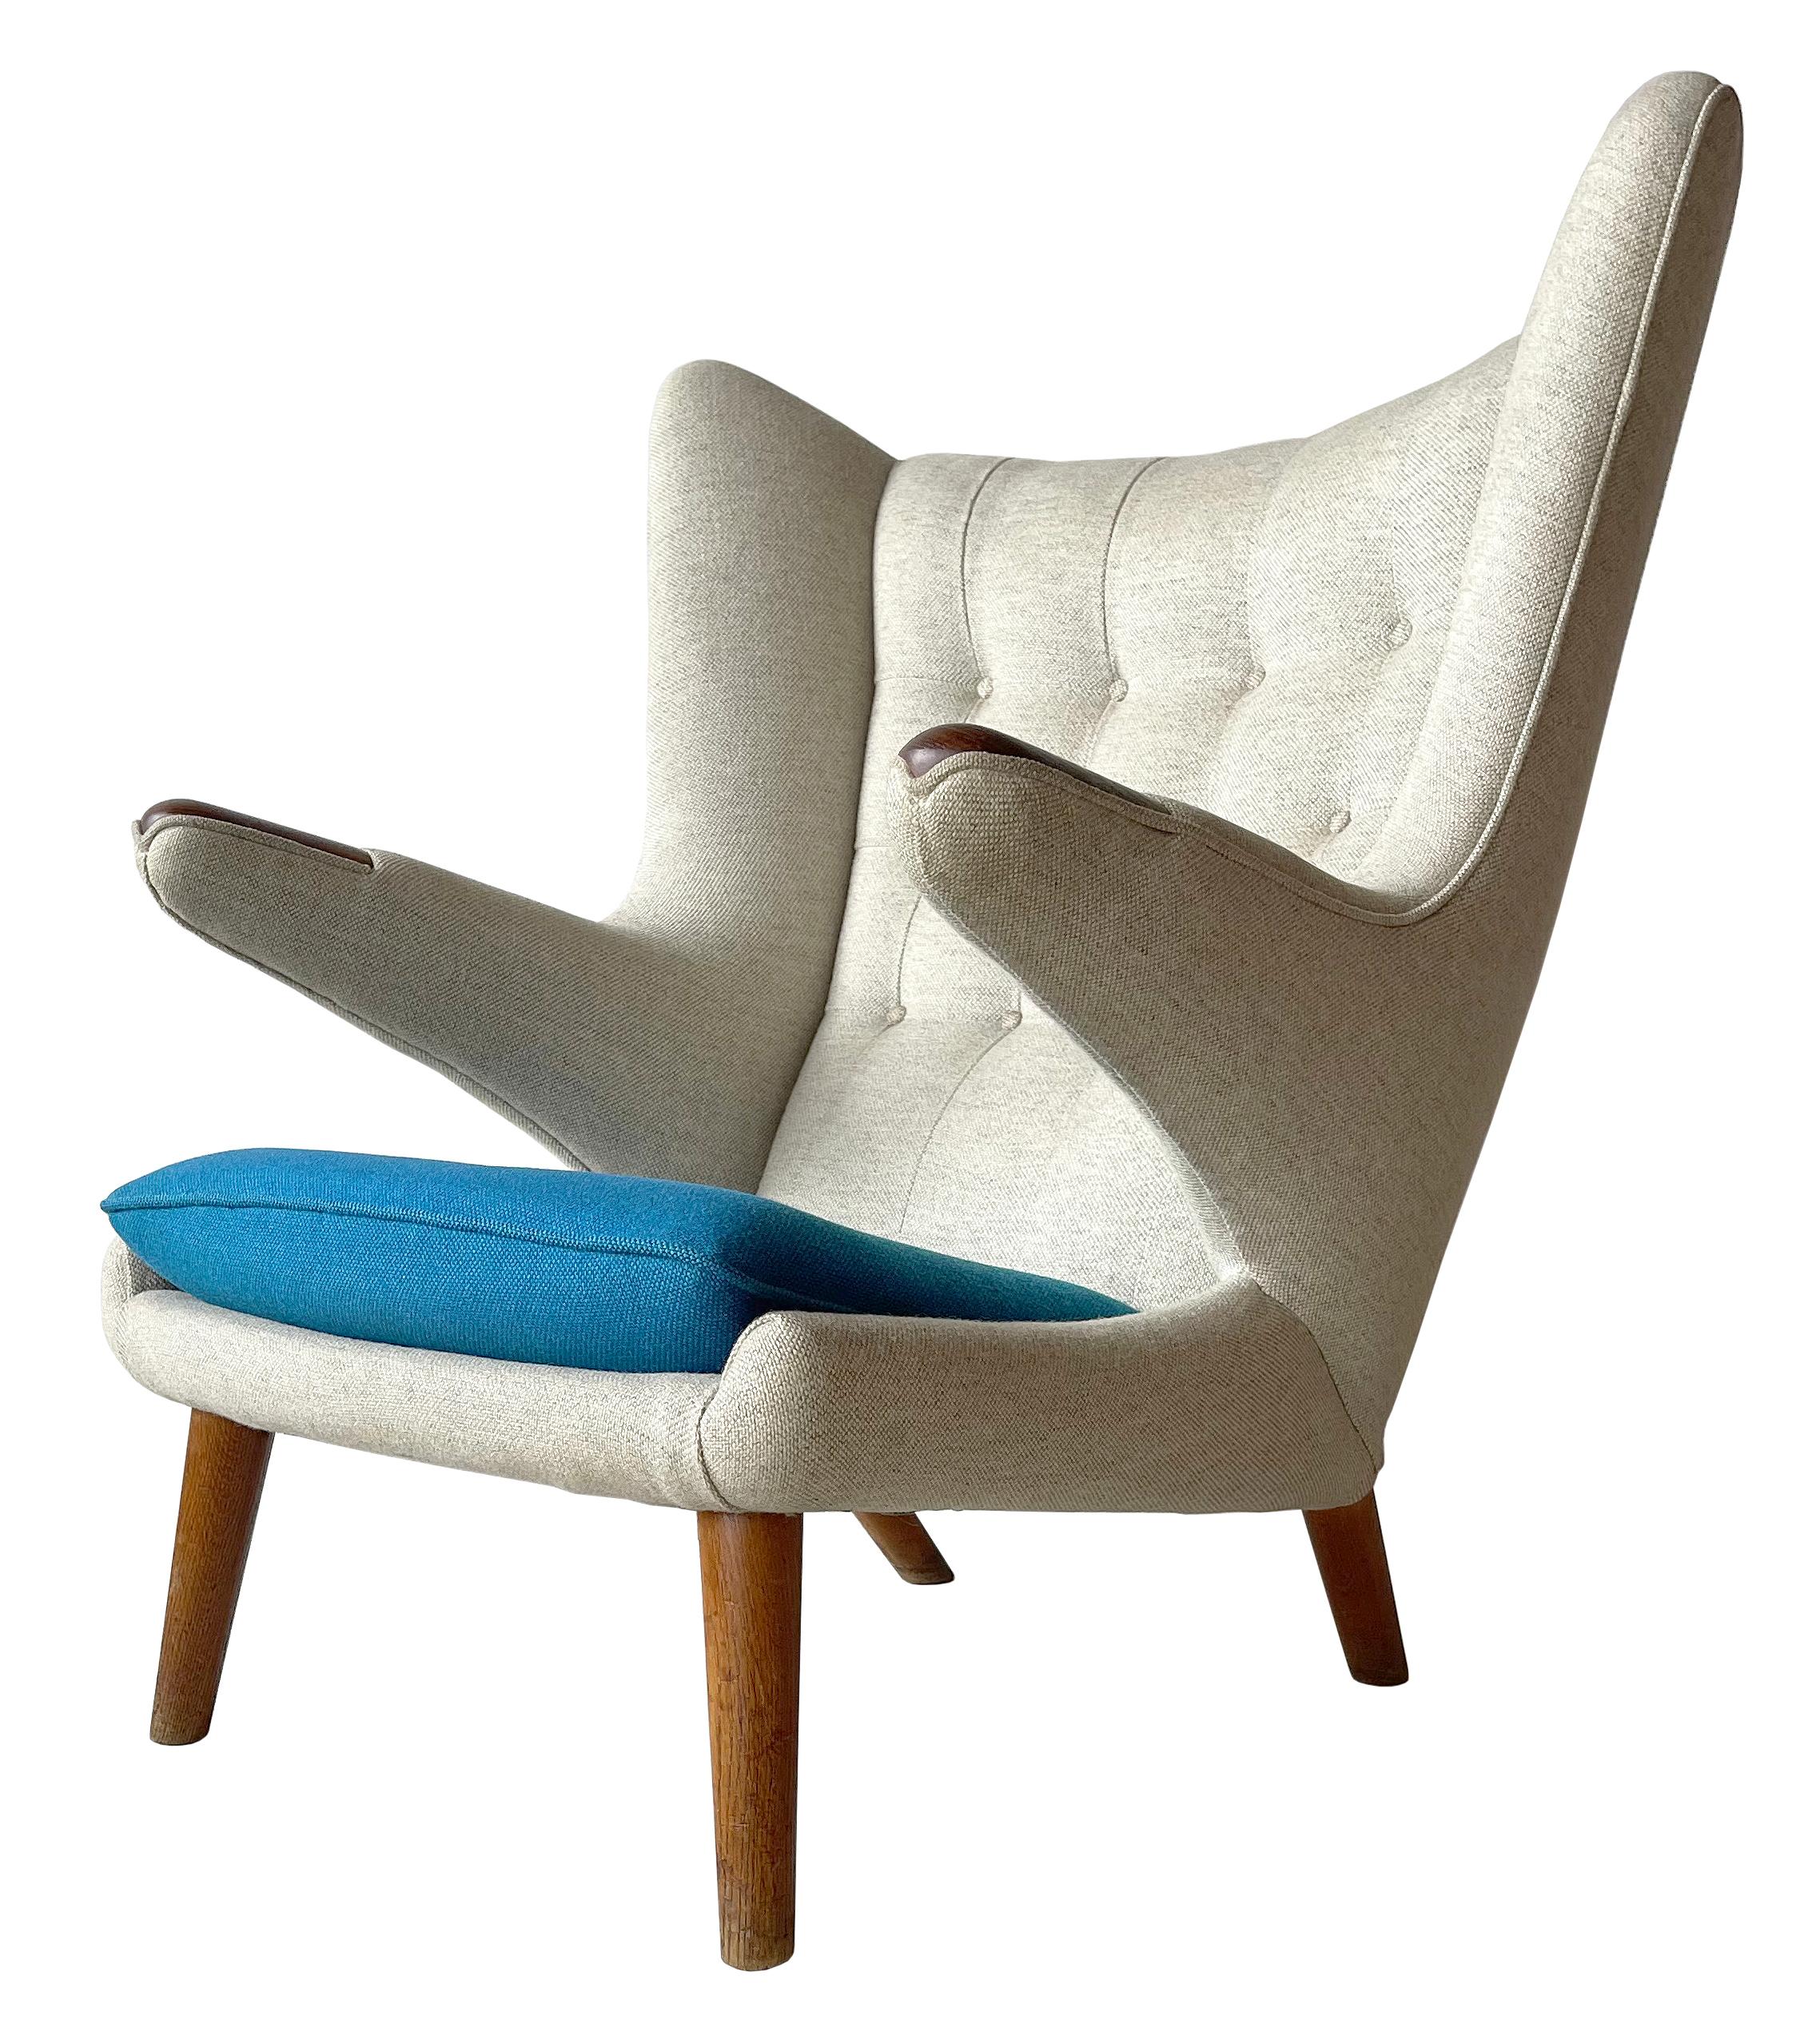 Ein toller früher Papabear-Stuhl, entworfen von Hans J. Wegner in den späten 60er Jahren.
Dieses Beispiel aus massivem Teakholz.   Massive Pfoten und Füße mit Polsterung aus Halingdal-Wolle.    Gepaart mit der passenden Ottomane . Dieses Beispiel